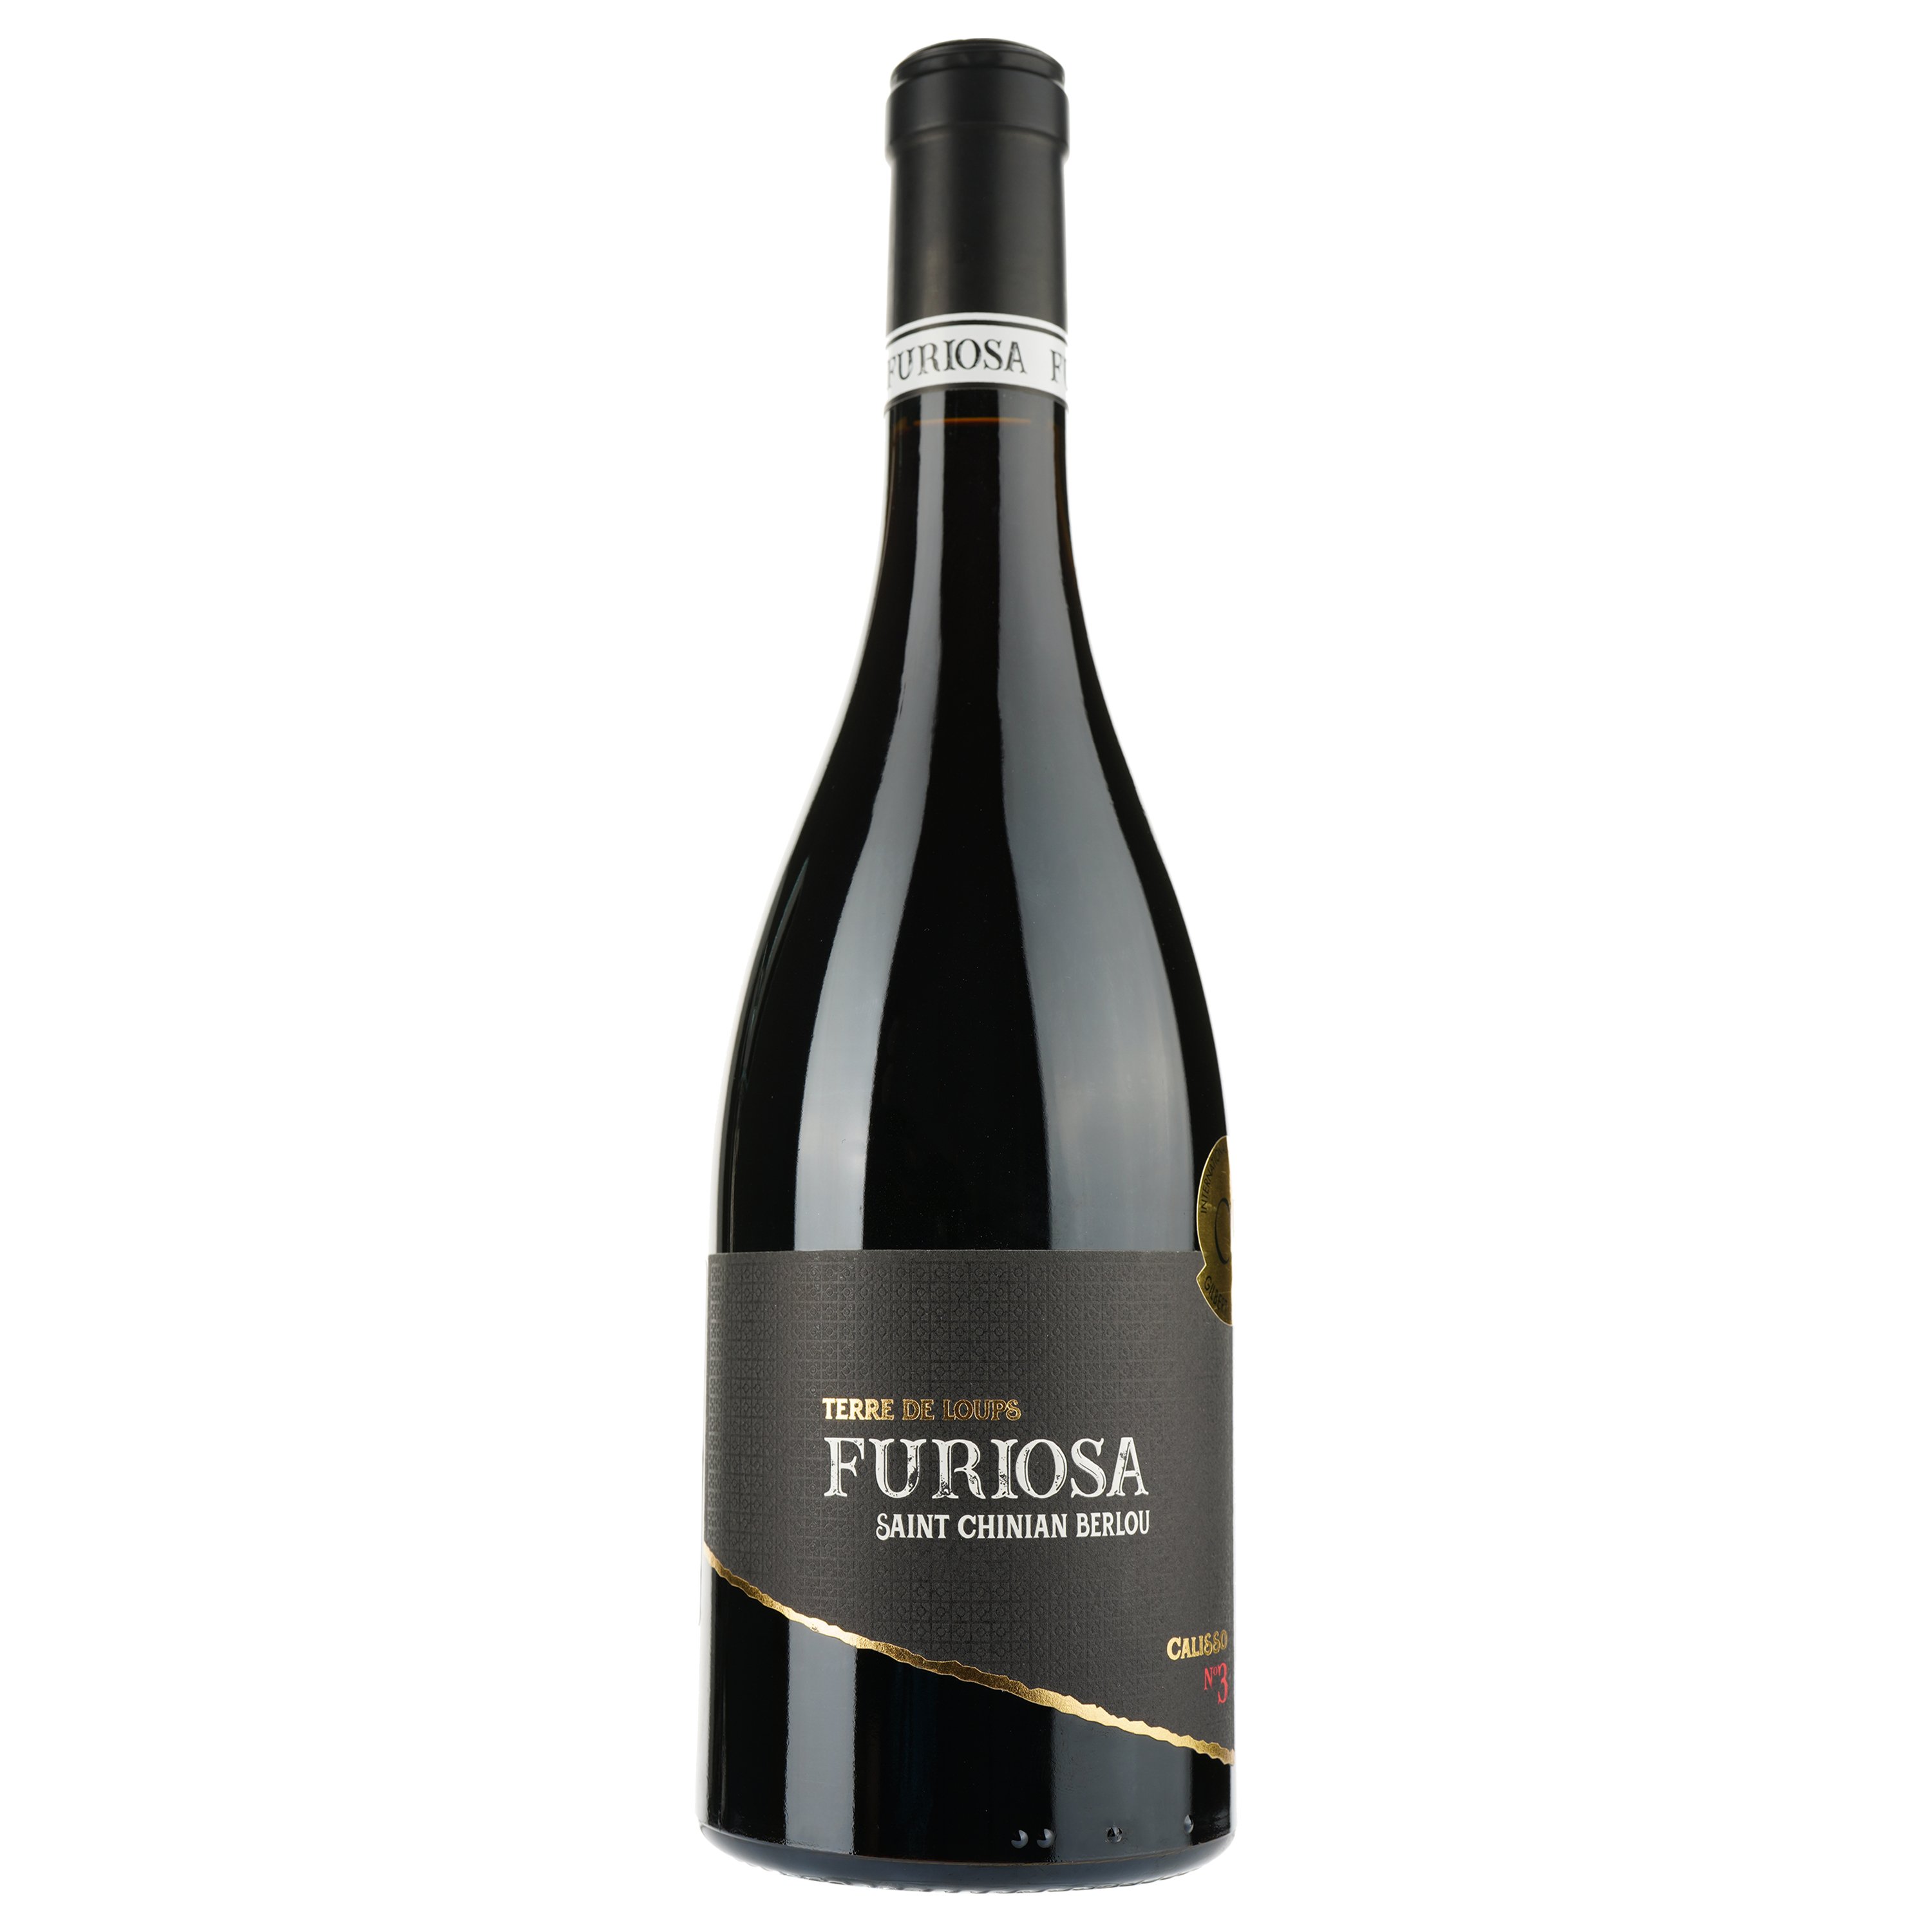 Вино Furiosa Calisso Rouge 2018 AOP Saint Chinian Berlou, красное, сухое, 0,75 л - фото 1